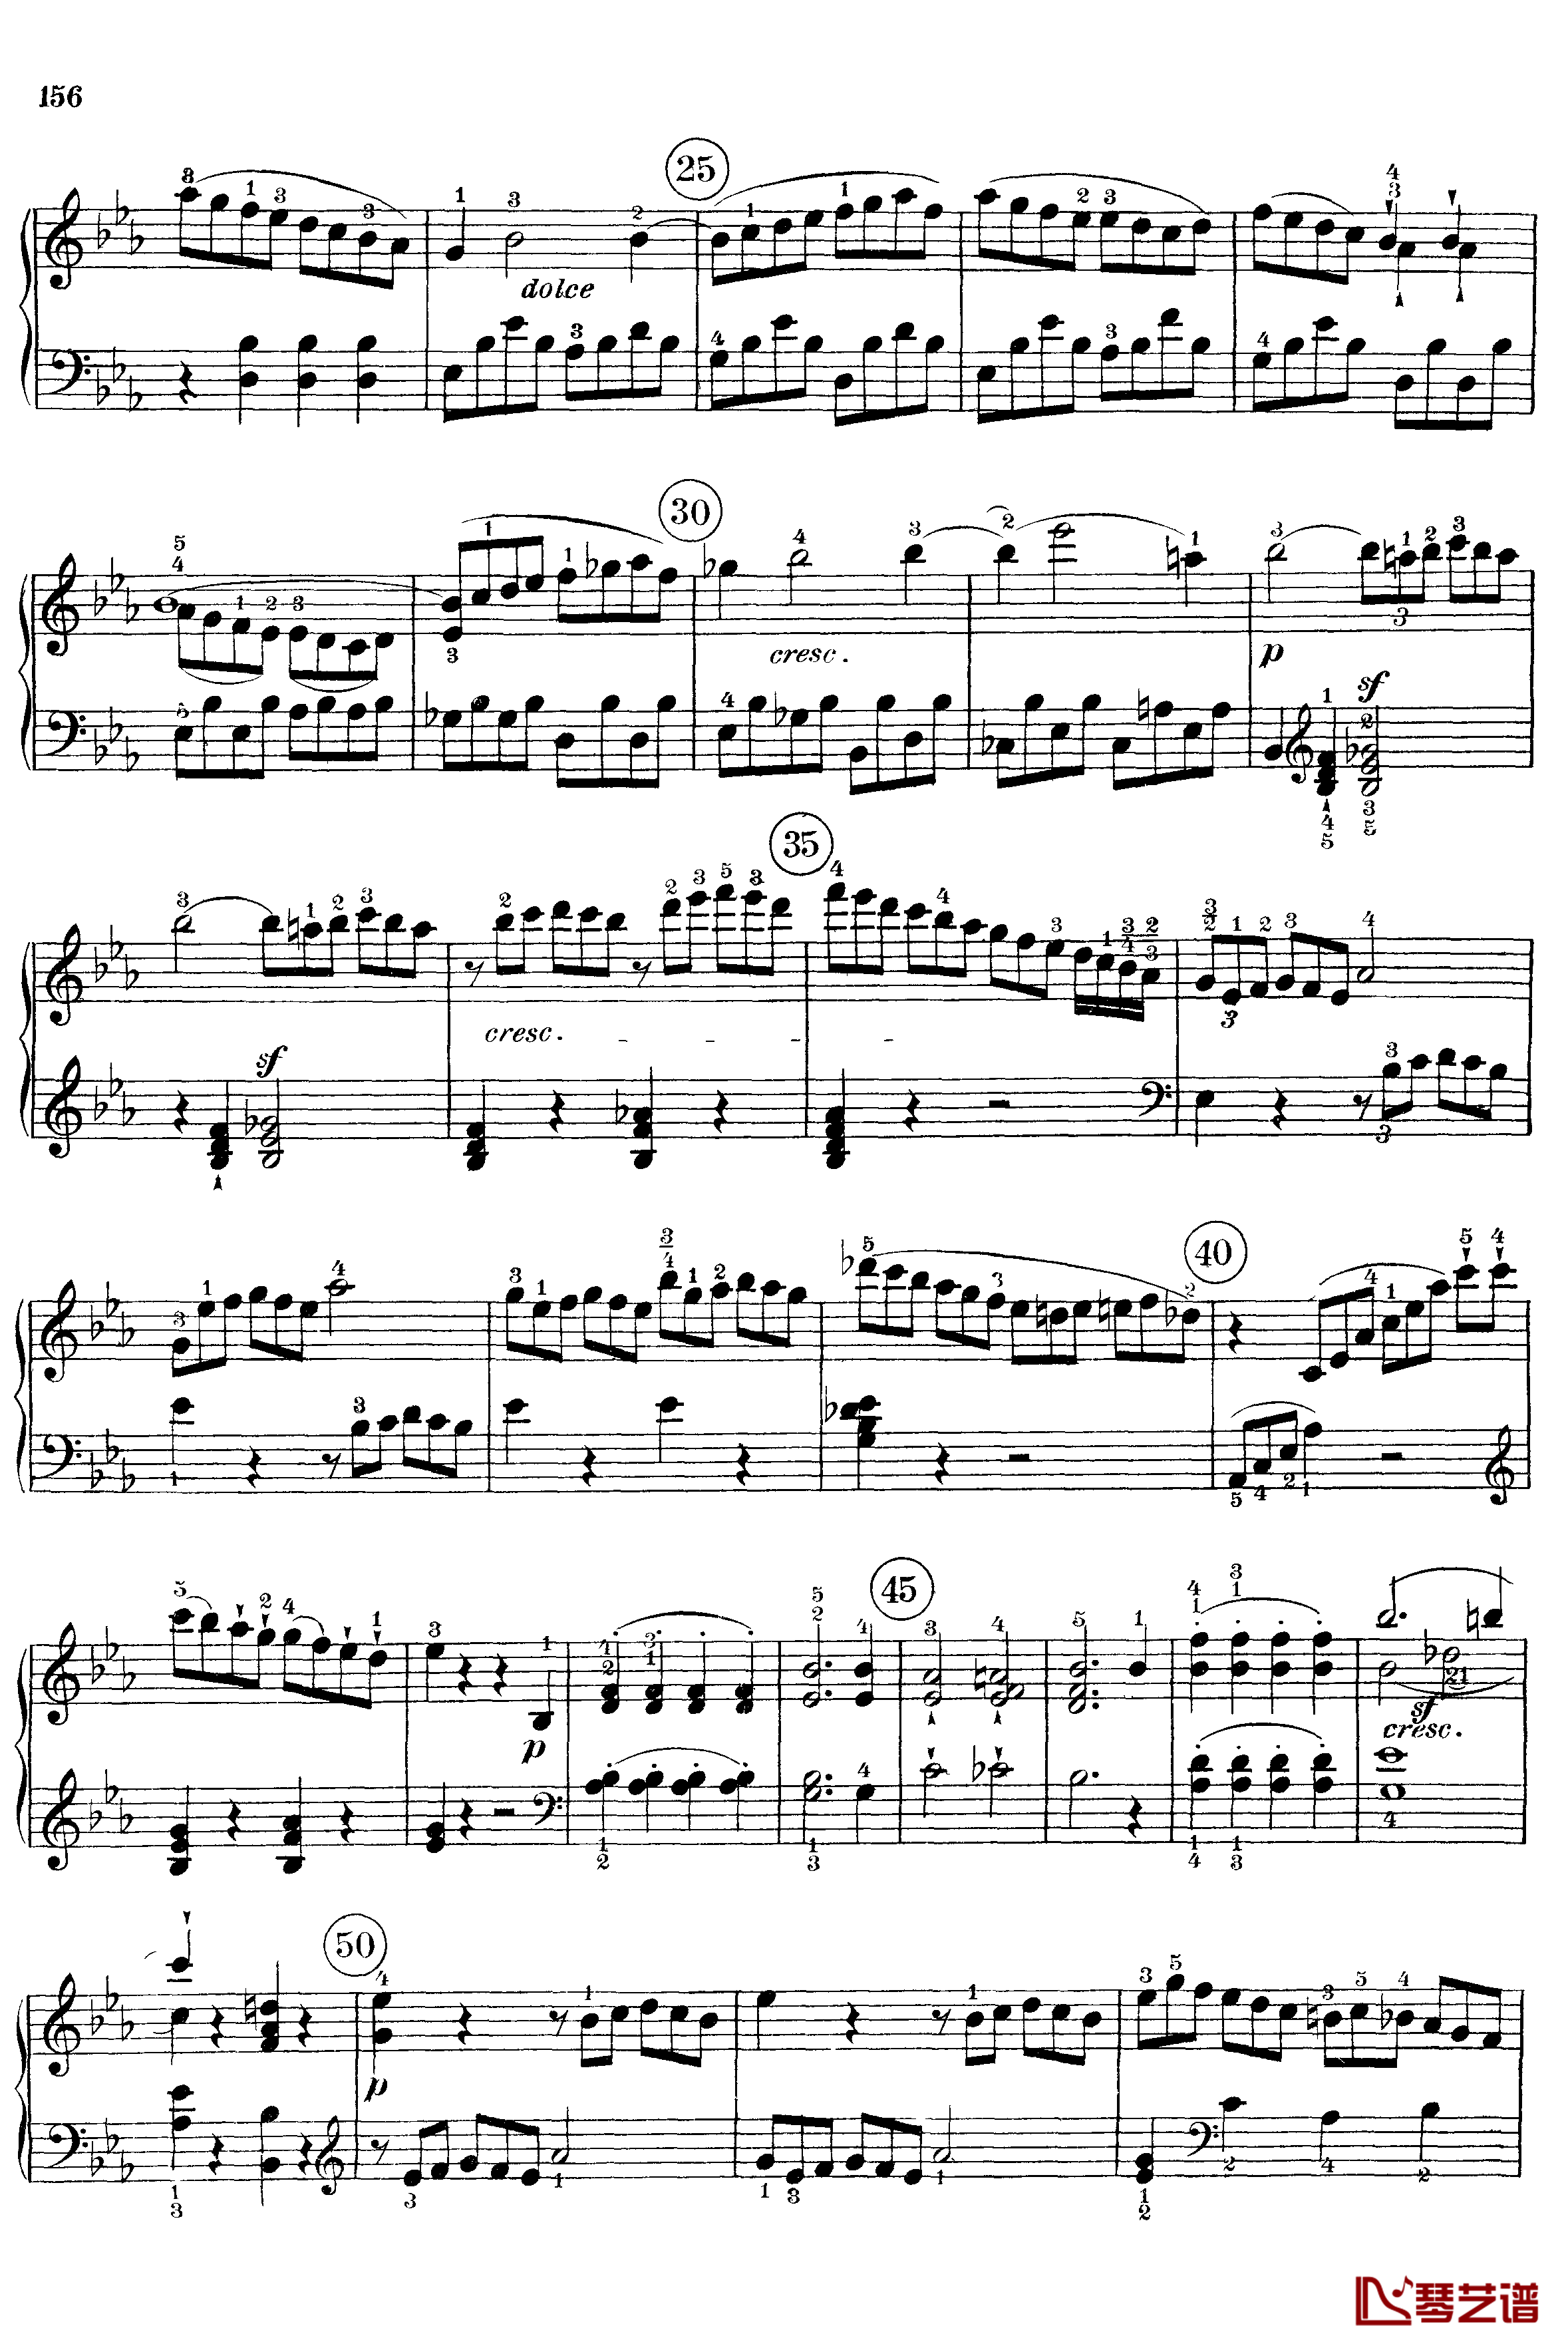 悲怆钢琴谱-c小调第八号钢琴奏鸣曲-全乐章-带指法版-贝多芬-beethoven14